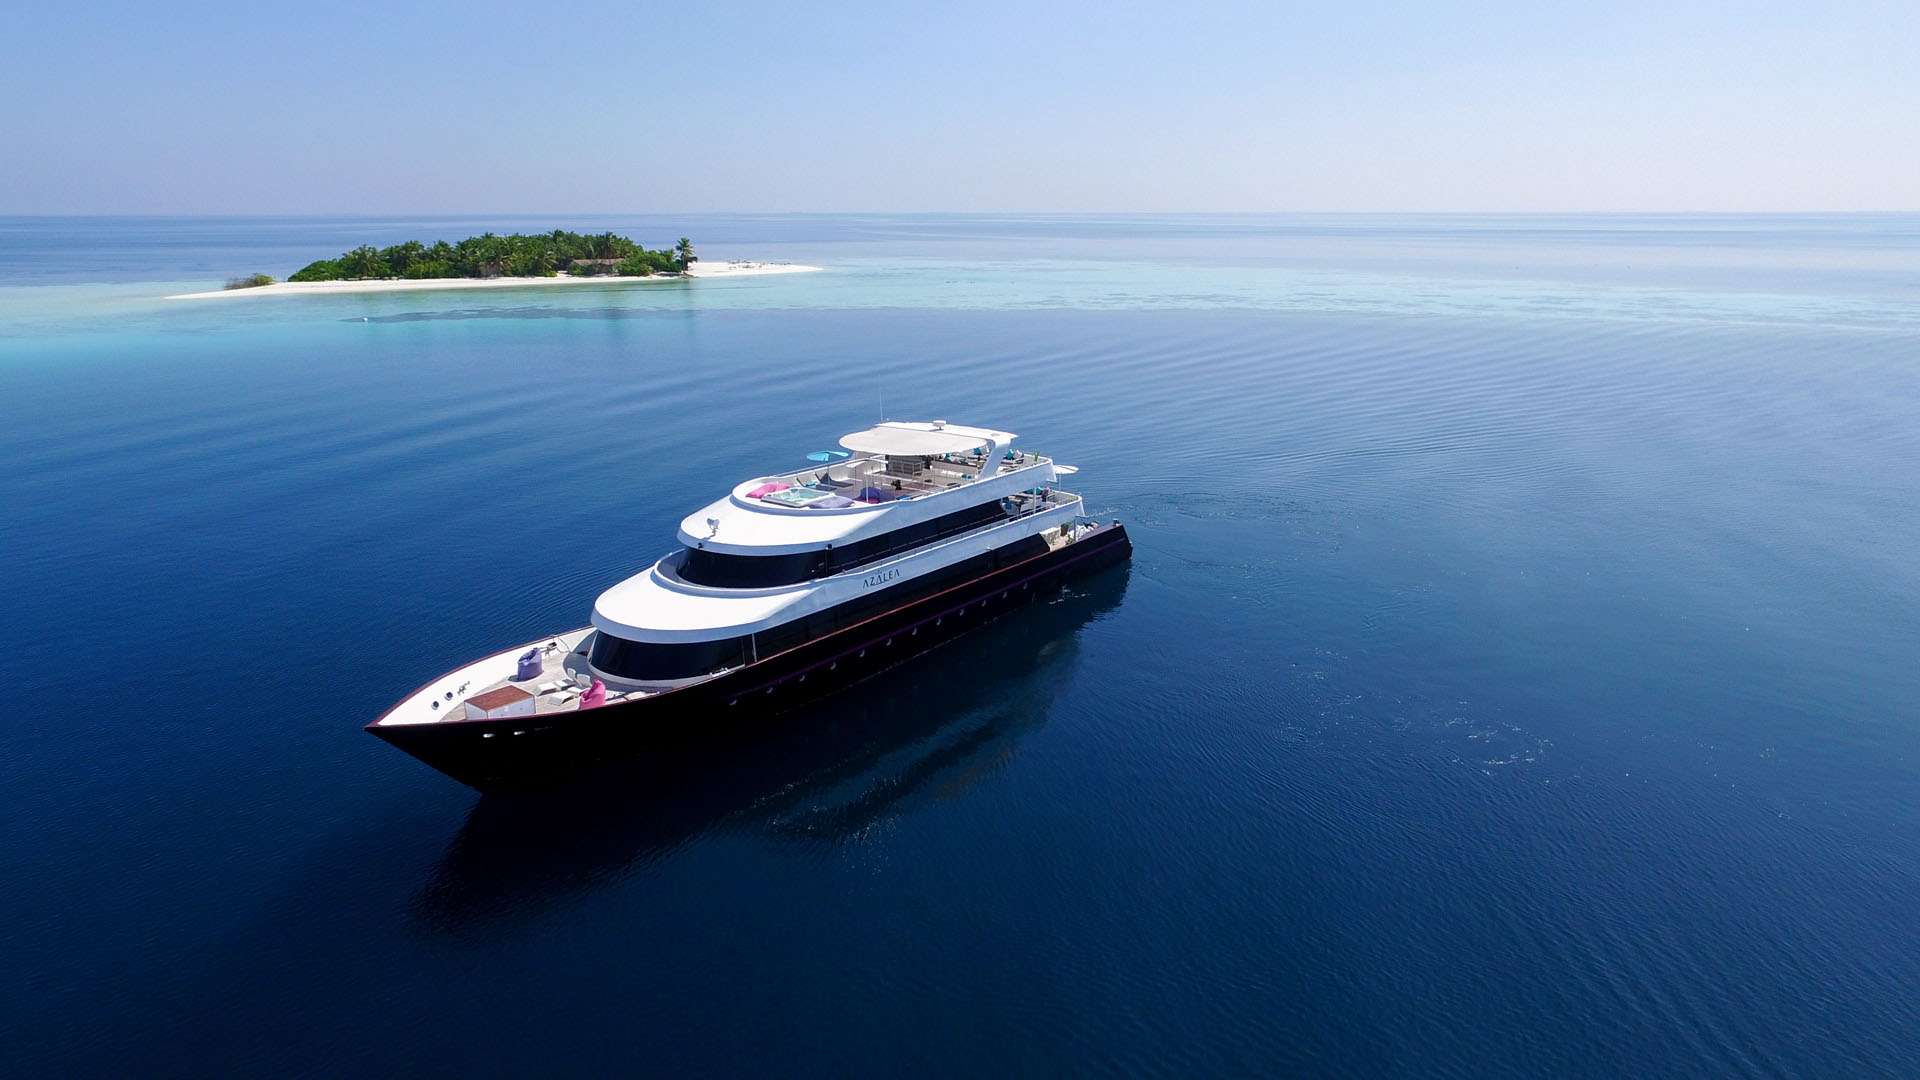 azalea - Luxury yacht charter Maldives & Boat hire in Indian Ocean & SE Asia 6